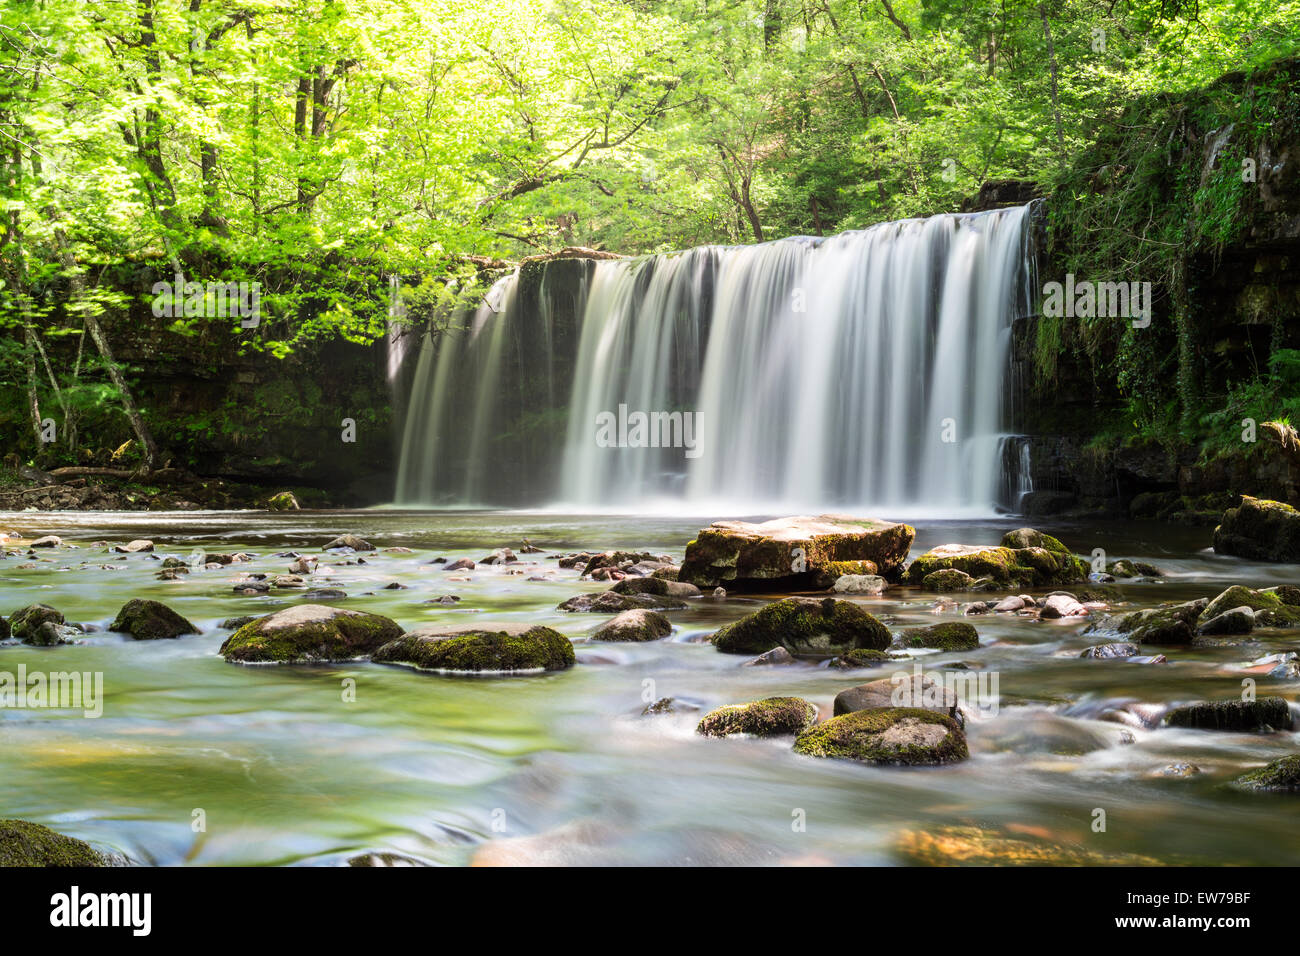 Sgwd Ddwli Uchaf (Upper Gushing Falls) waterfall near Pontneddfechan, South Wales. Stock Photo